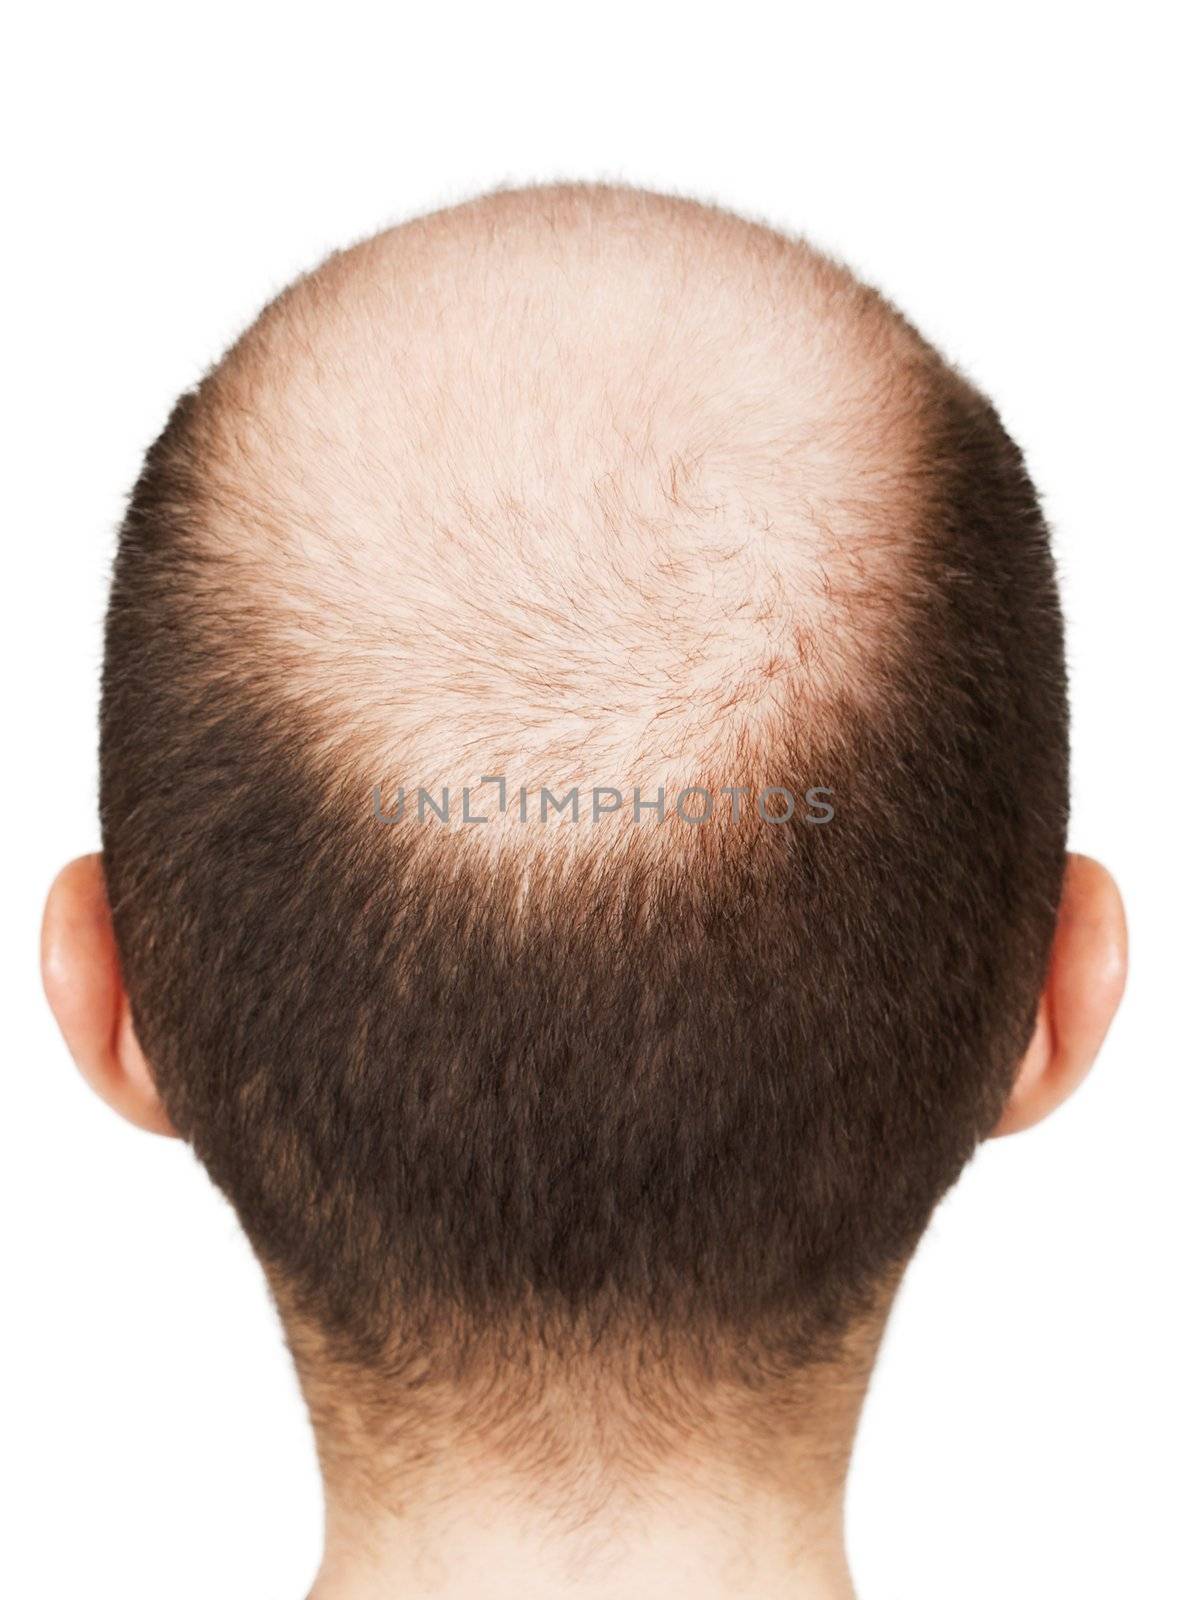 Bald men head by ia_64